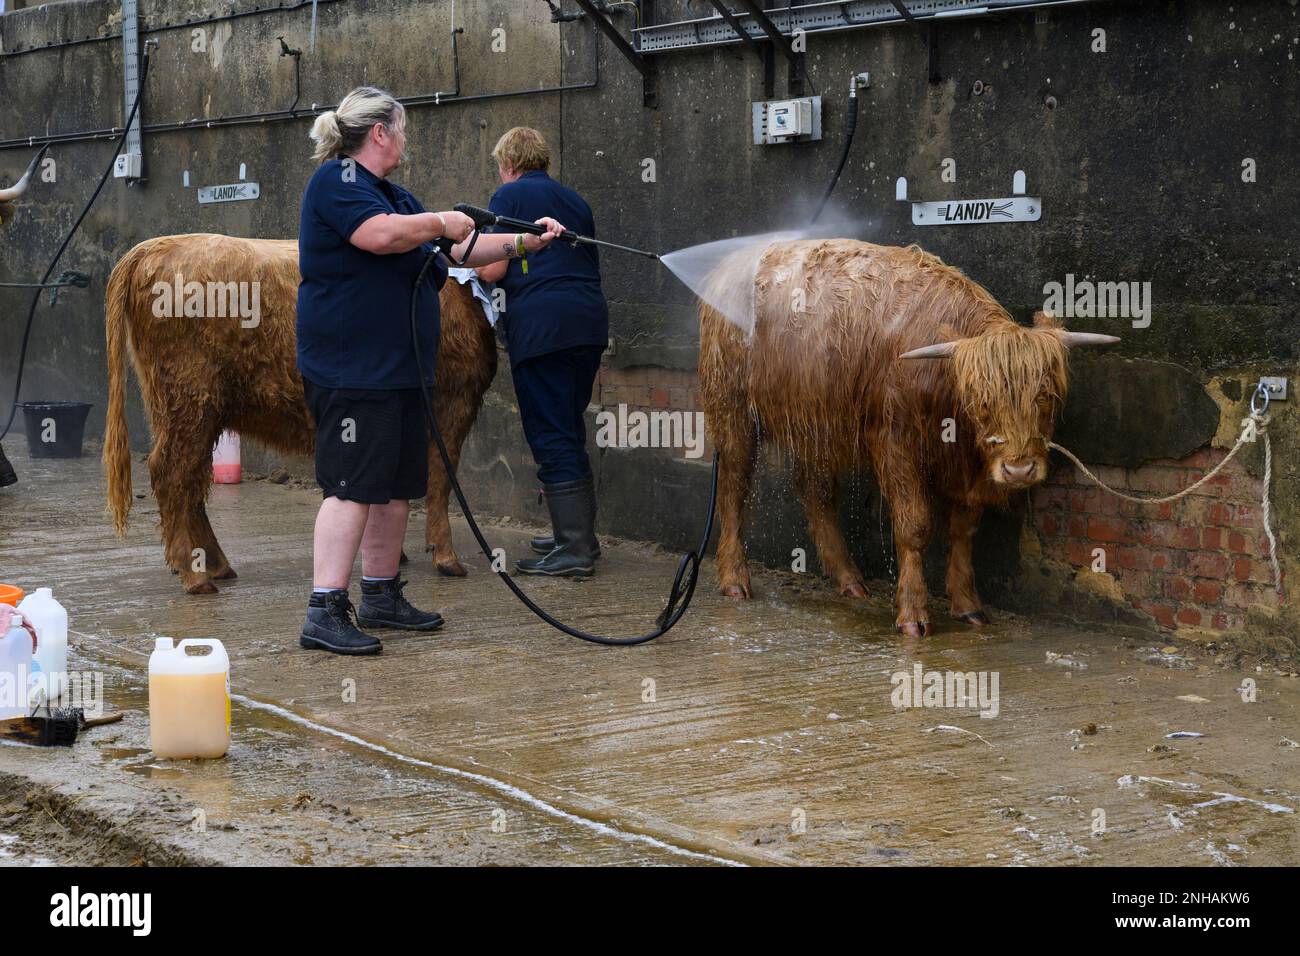 Femmes debout, lavant, lavant, nettoyant les animaux (vaches des Highlands trempées) à l'aide de jets d'eau - Great Yorkshire Show 2022, Harrogate Angleterre, Royaume-Uni. Banque D'Images